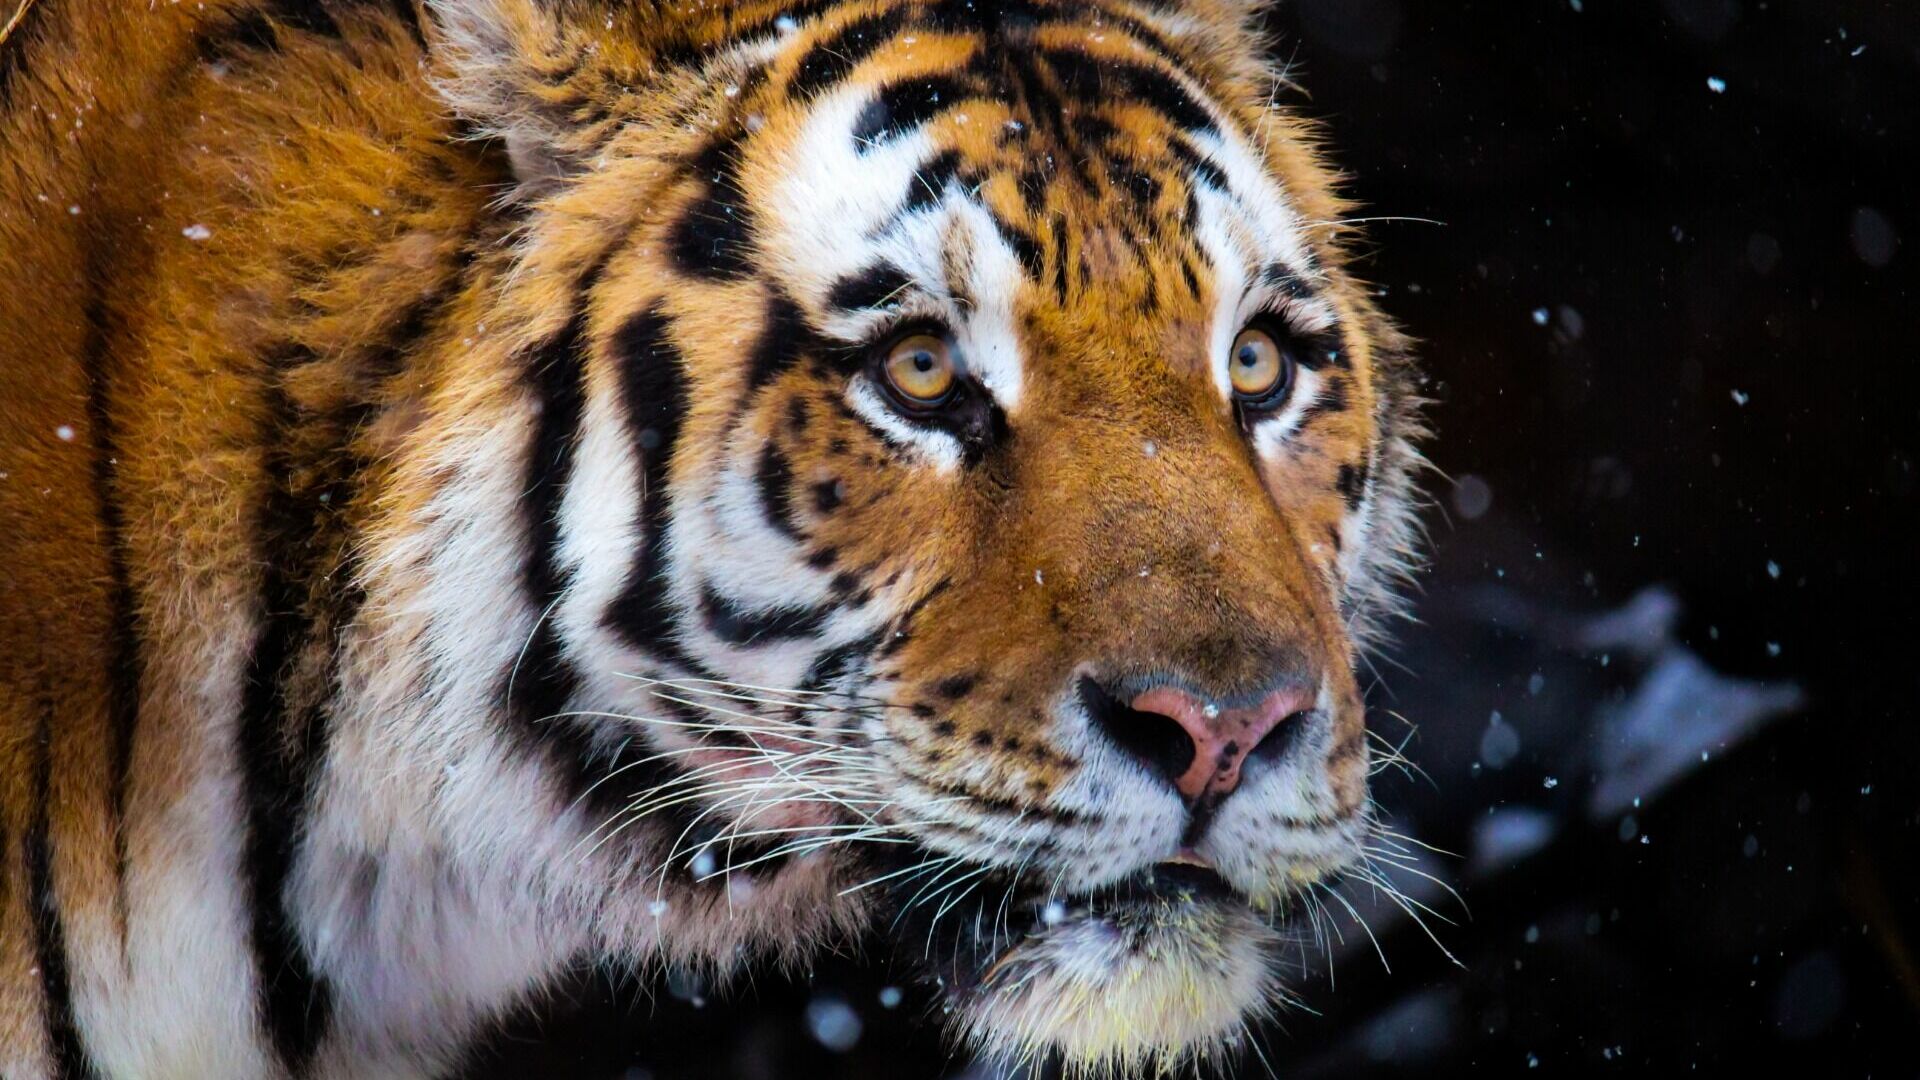 Тигры приходят охотиться к человеку в Хабаровском крае